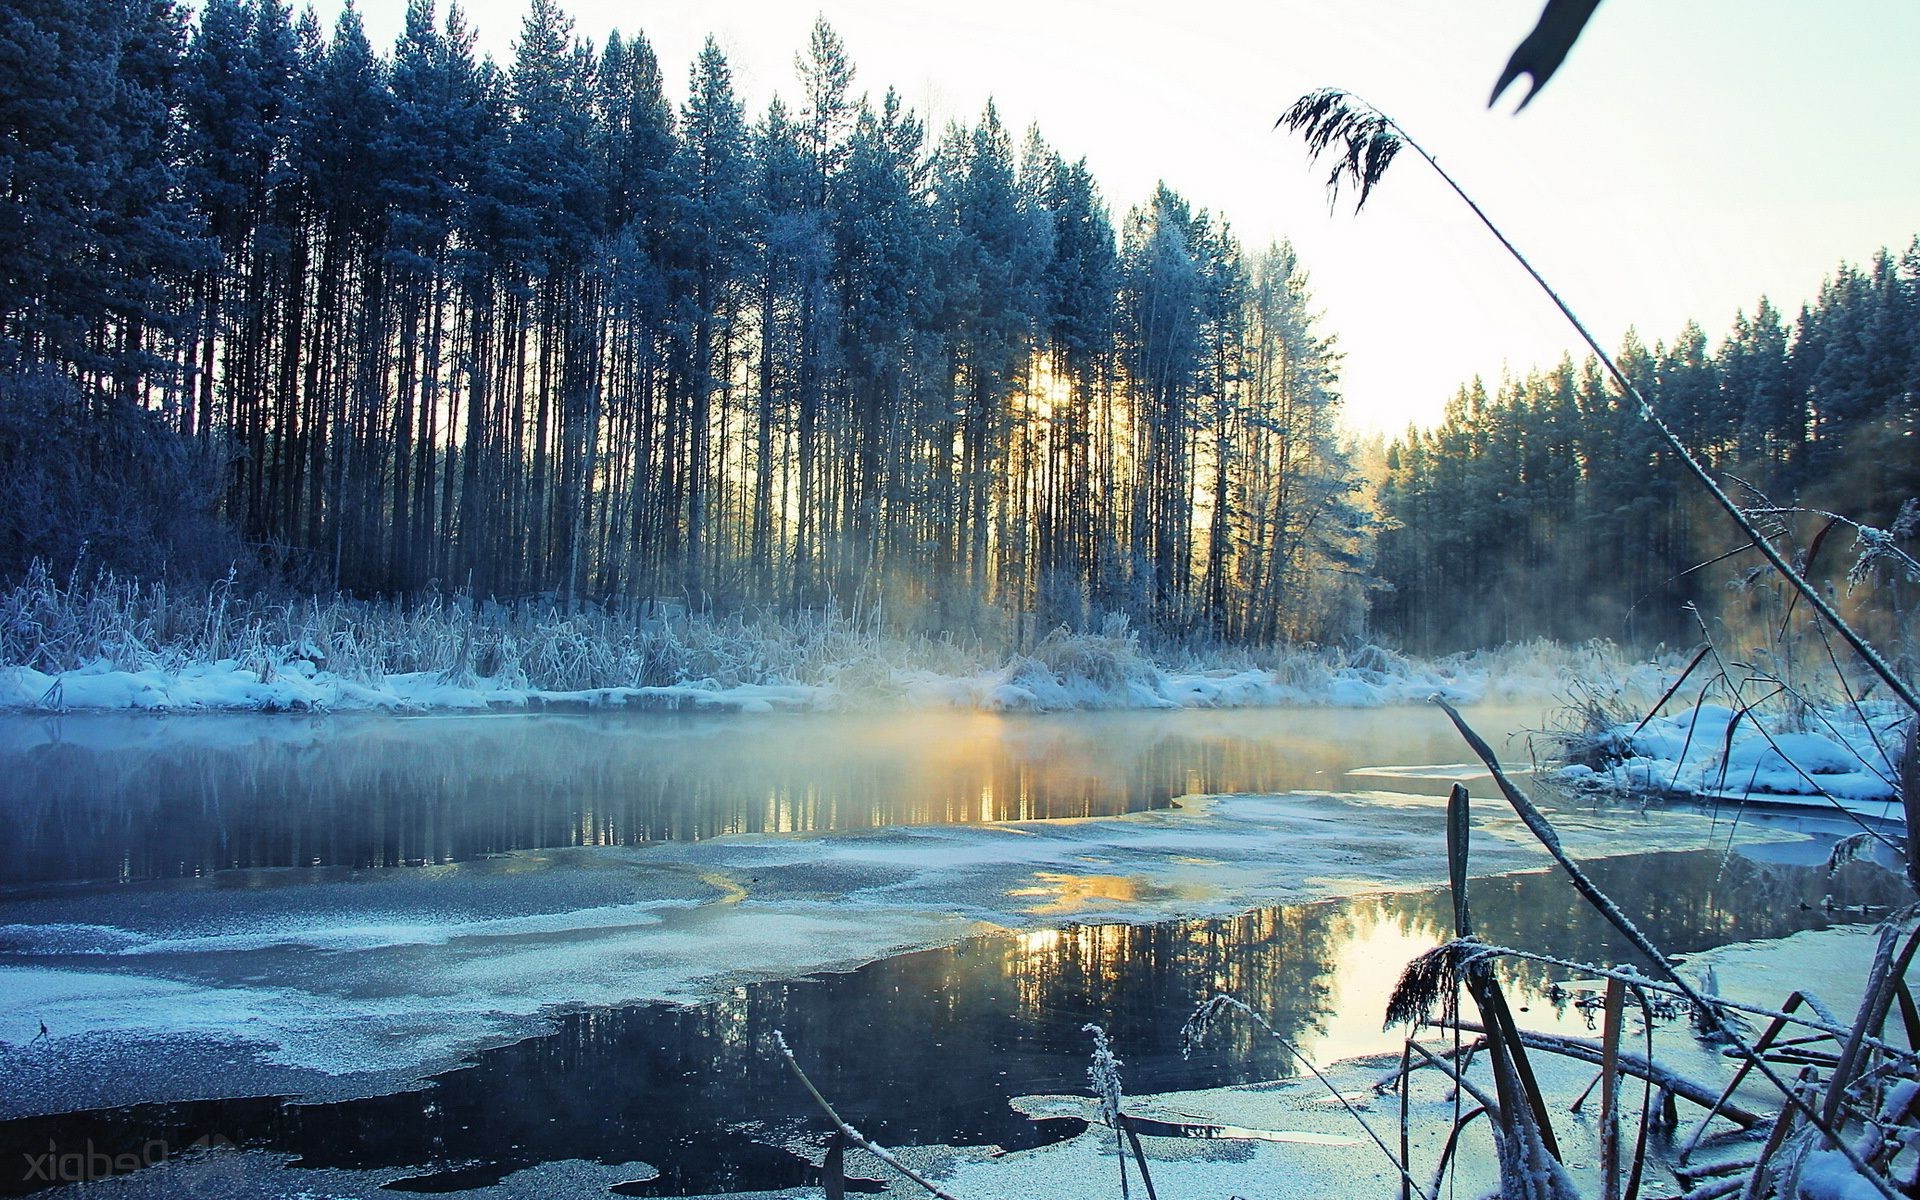 реки пруды и ручьи прудов и ручьев снег зима древесины воды пейзаж дерево озеро холодная природа на открытом воздухе река